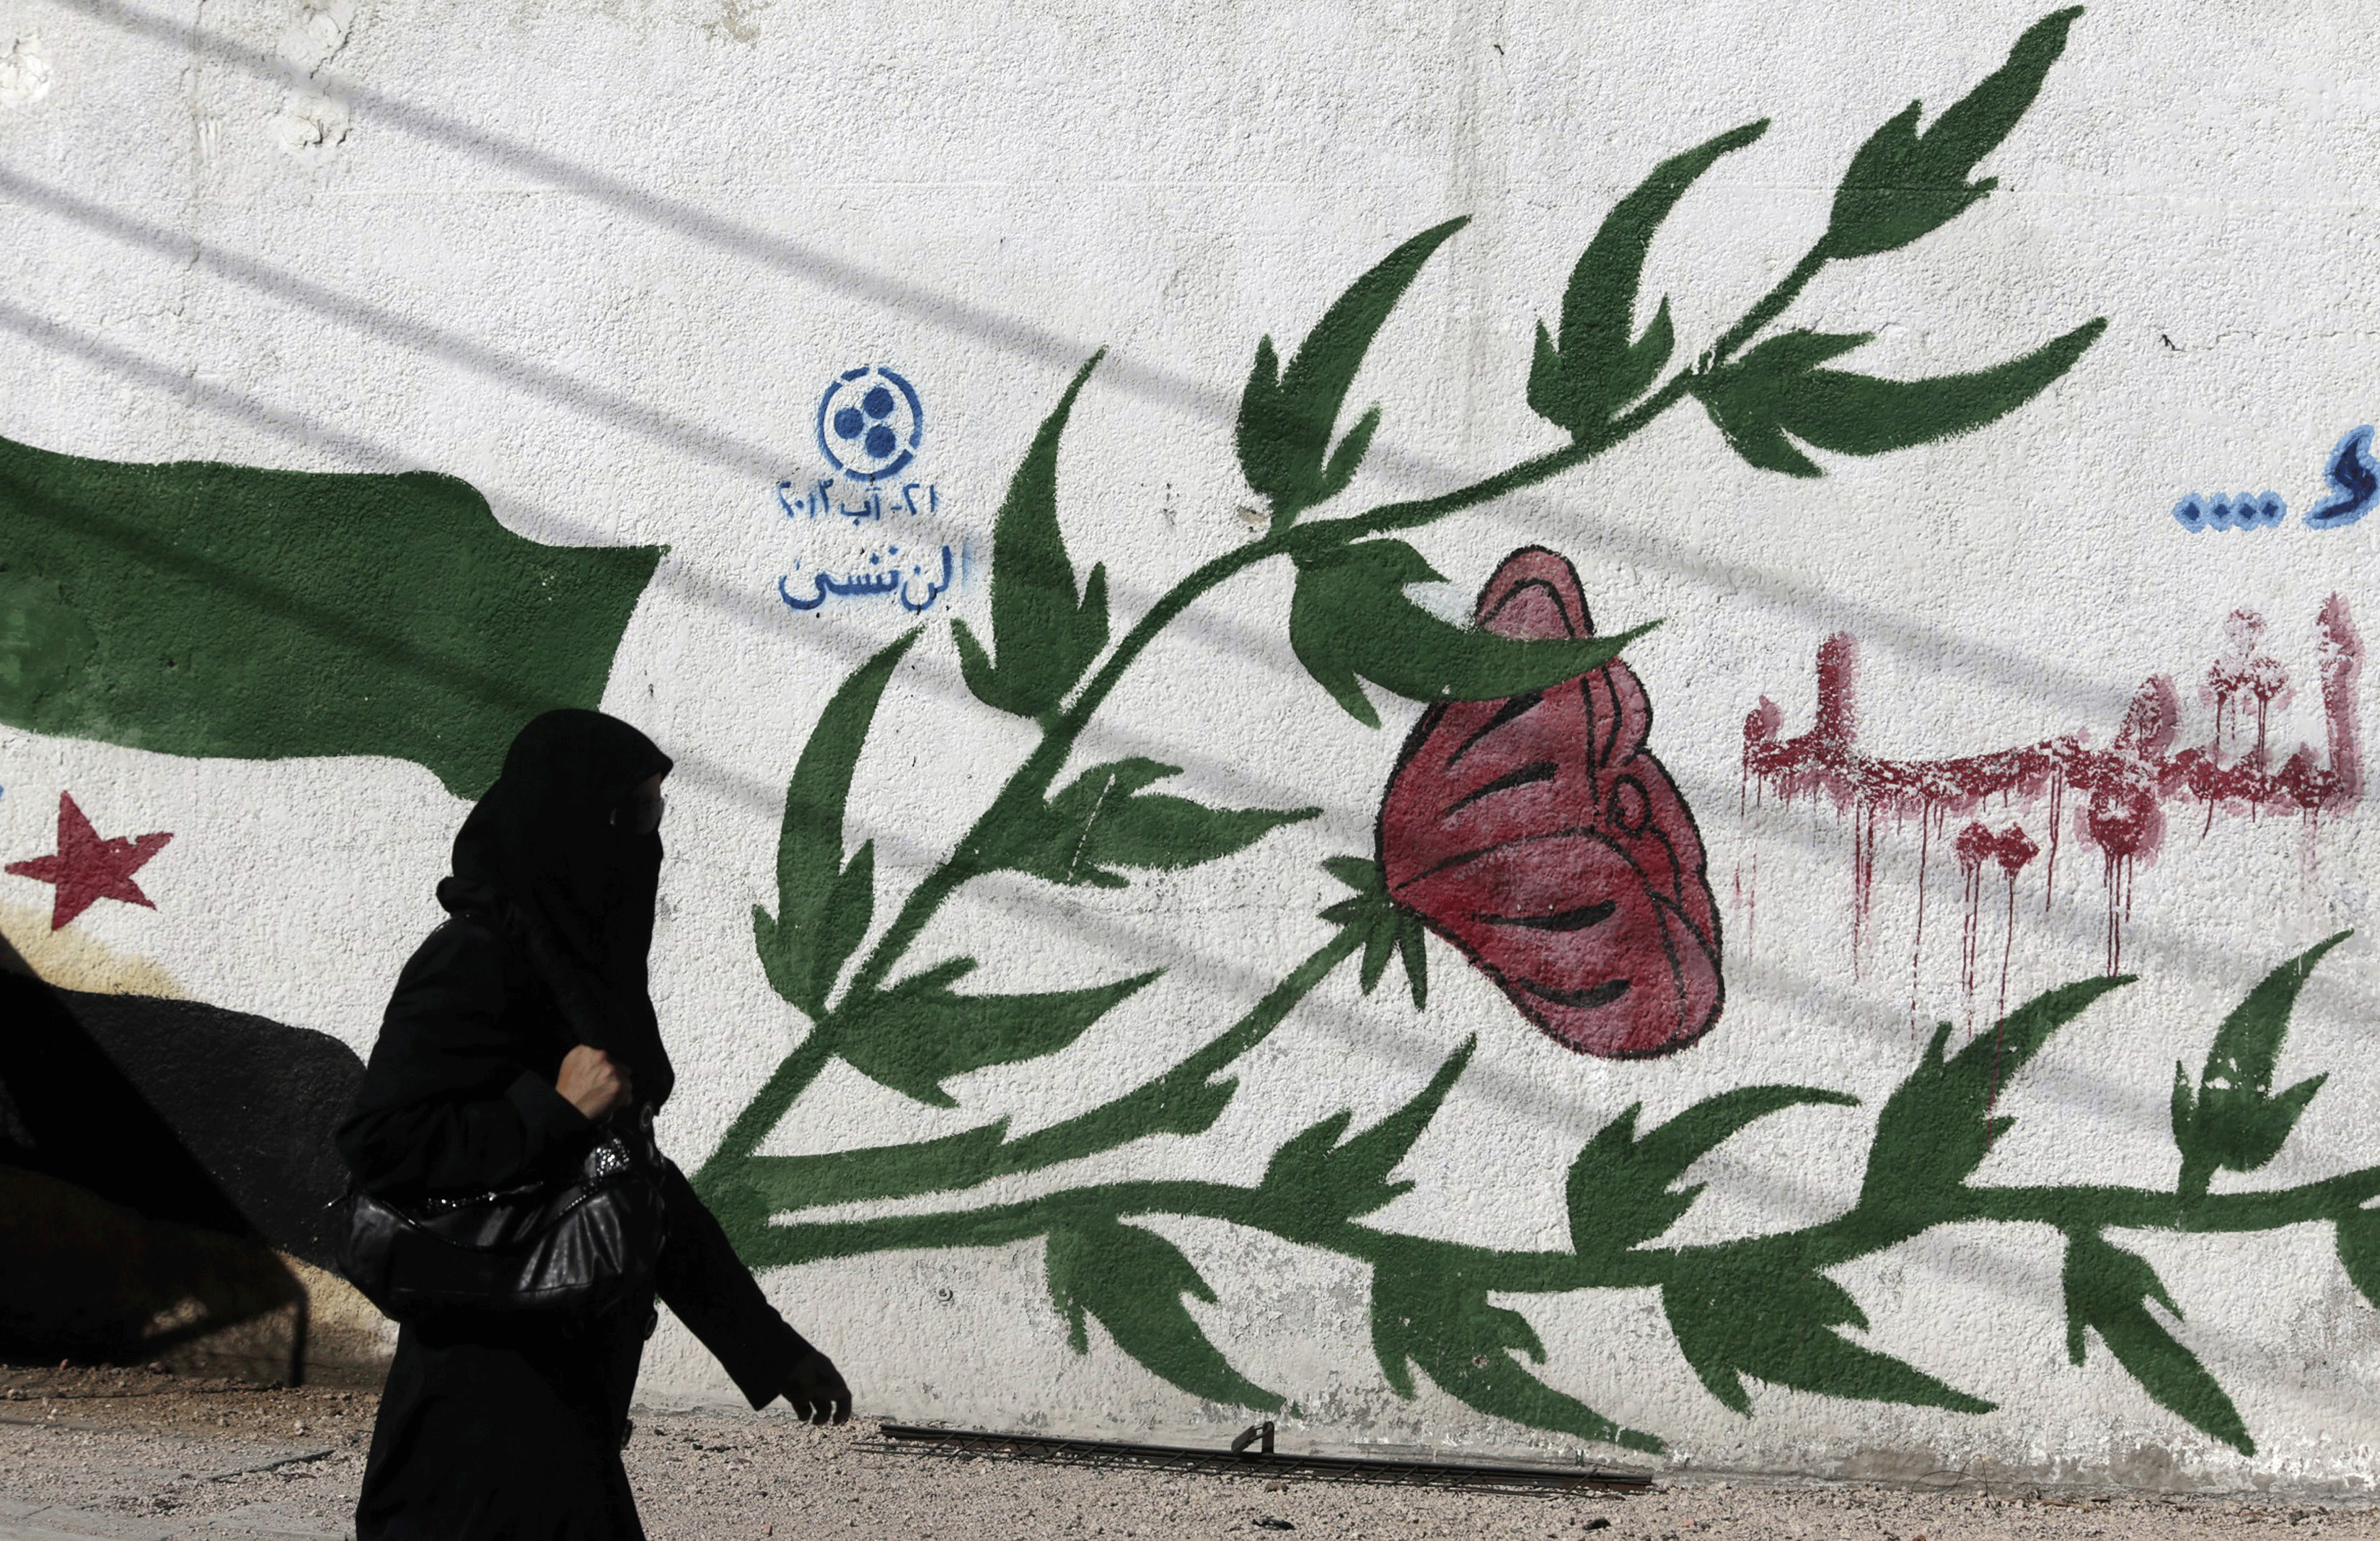 Une femme passe devant un graffiti à l'est de Ghouta en Syrie [Reuters - Bassam Khabieh]